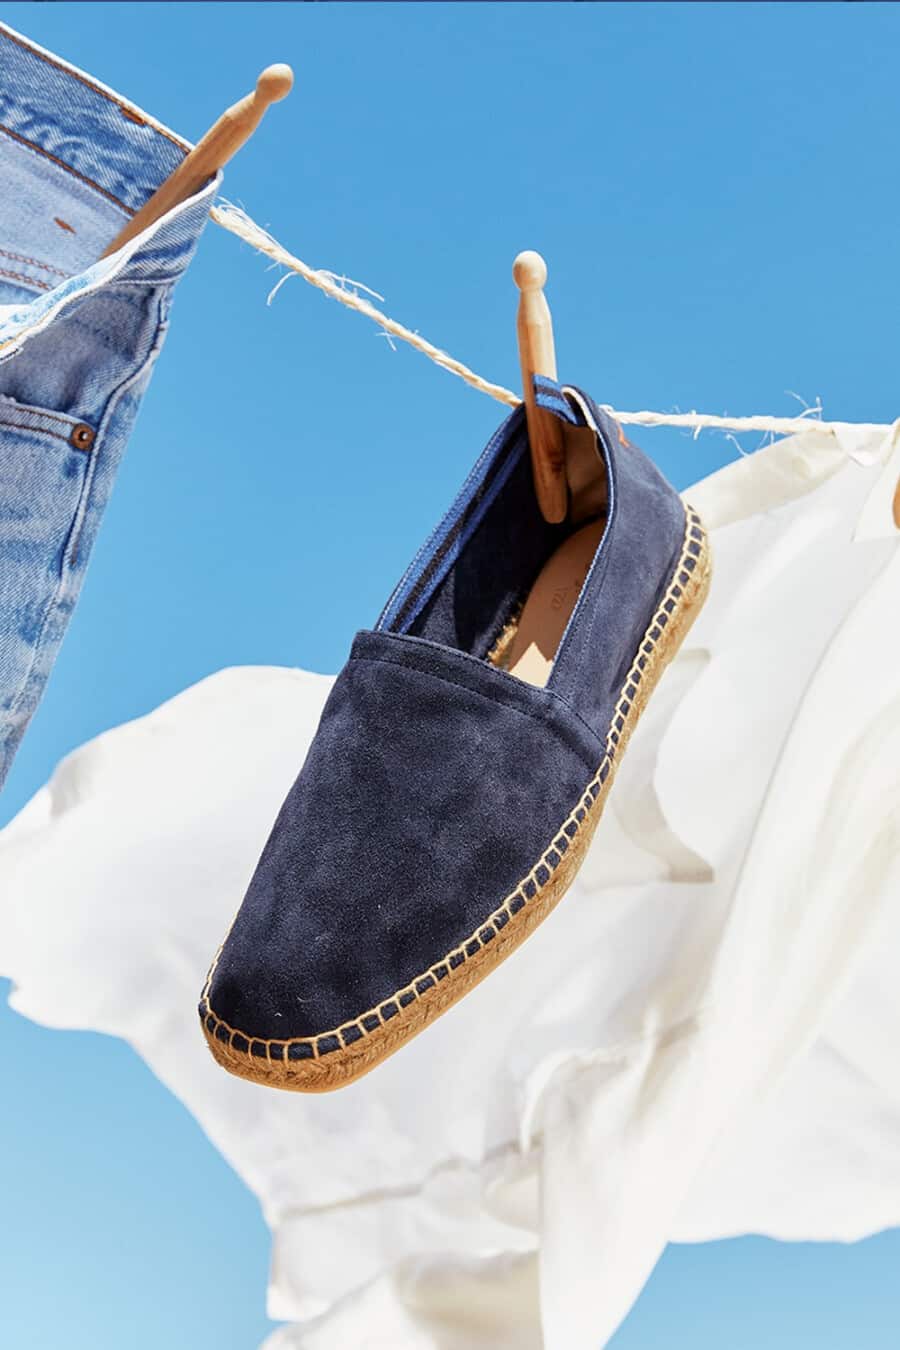 Men's blue suede Castaner espadrille hanging on washing line